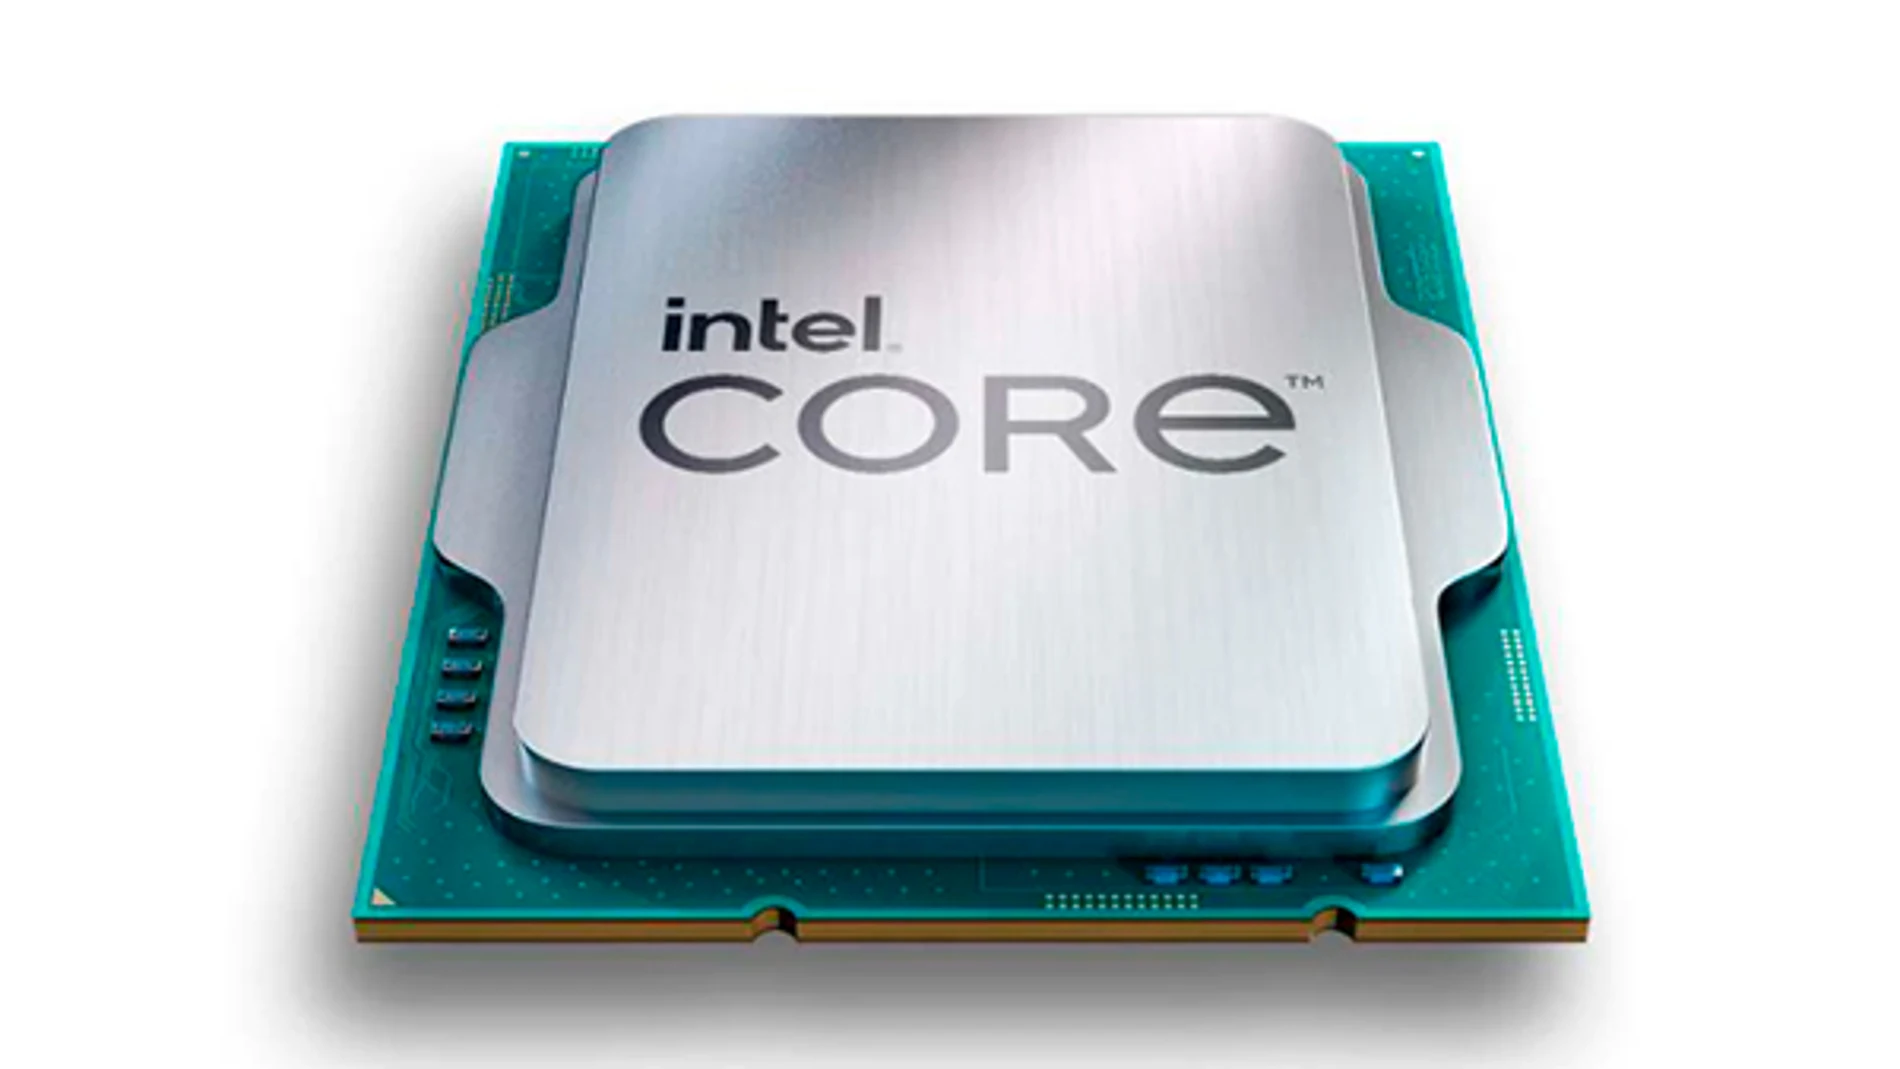 Imagen promocional de un procesador Intel Core Raptor Lake.